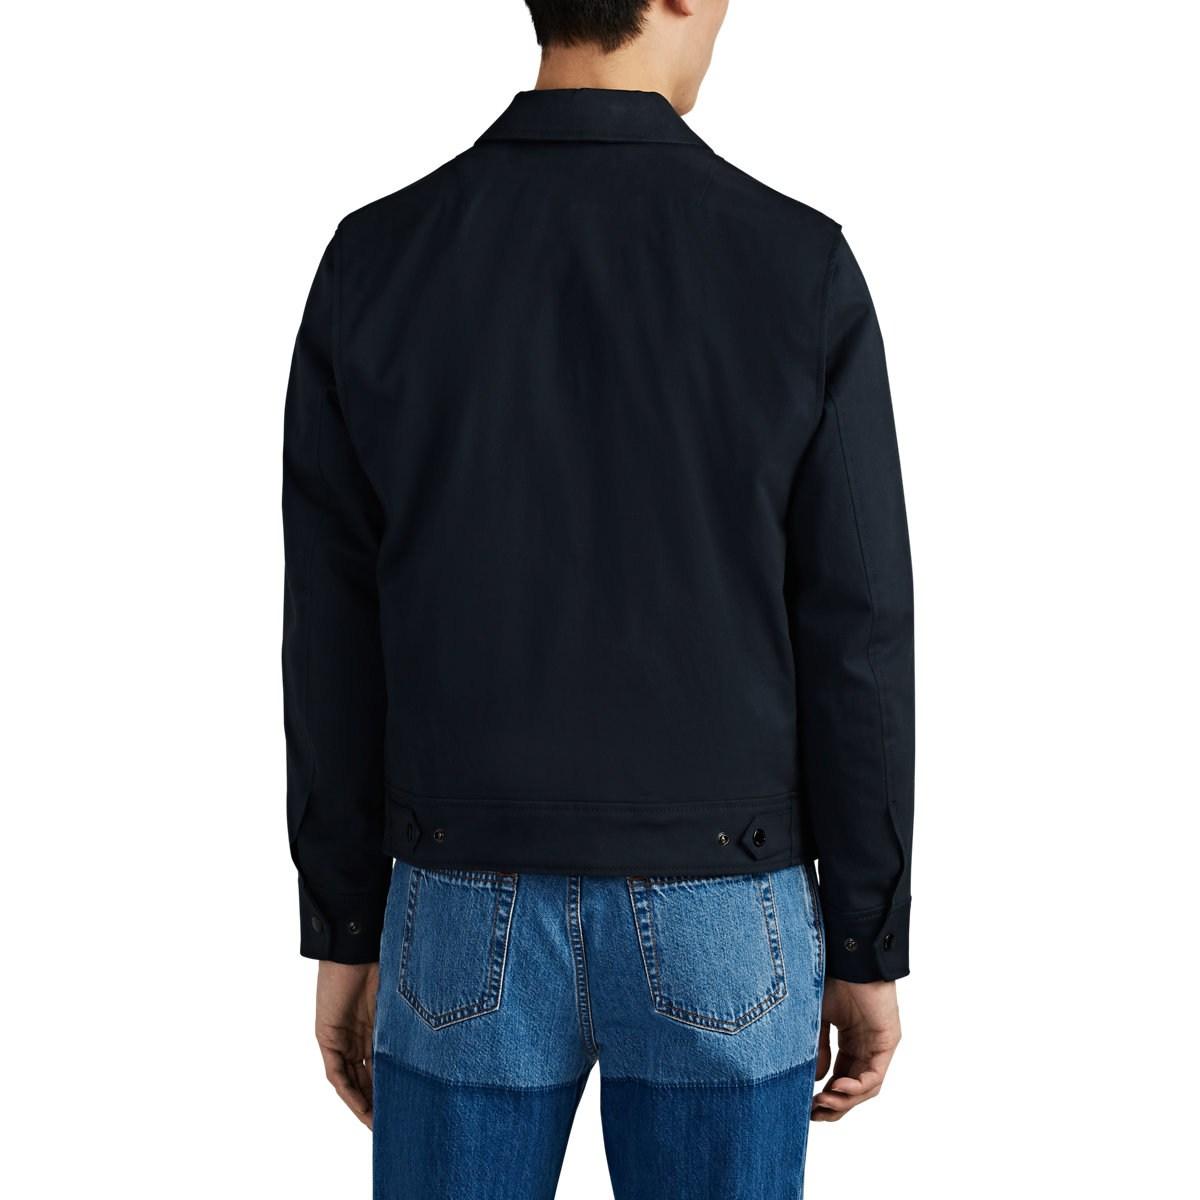 Rag & Bone garage Cotton Jacket in Navy (Blue) for Men - Lyst